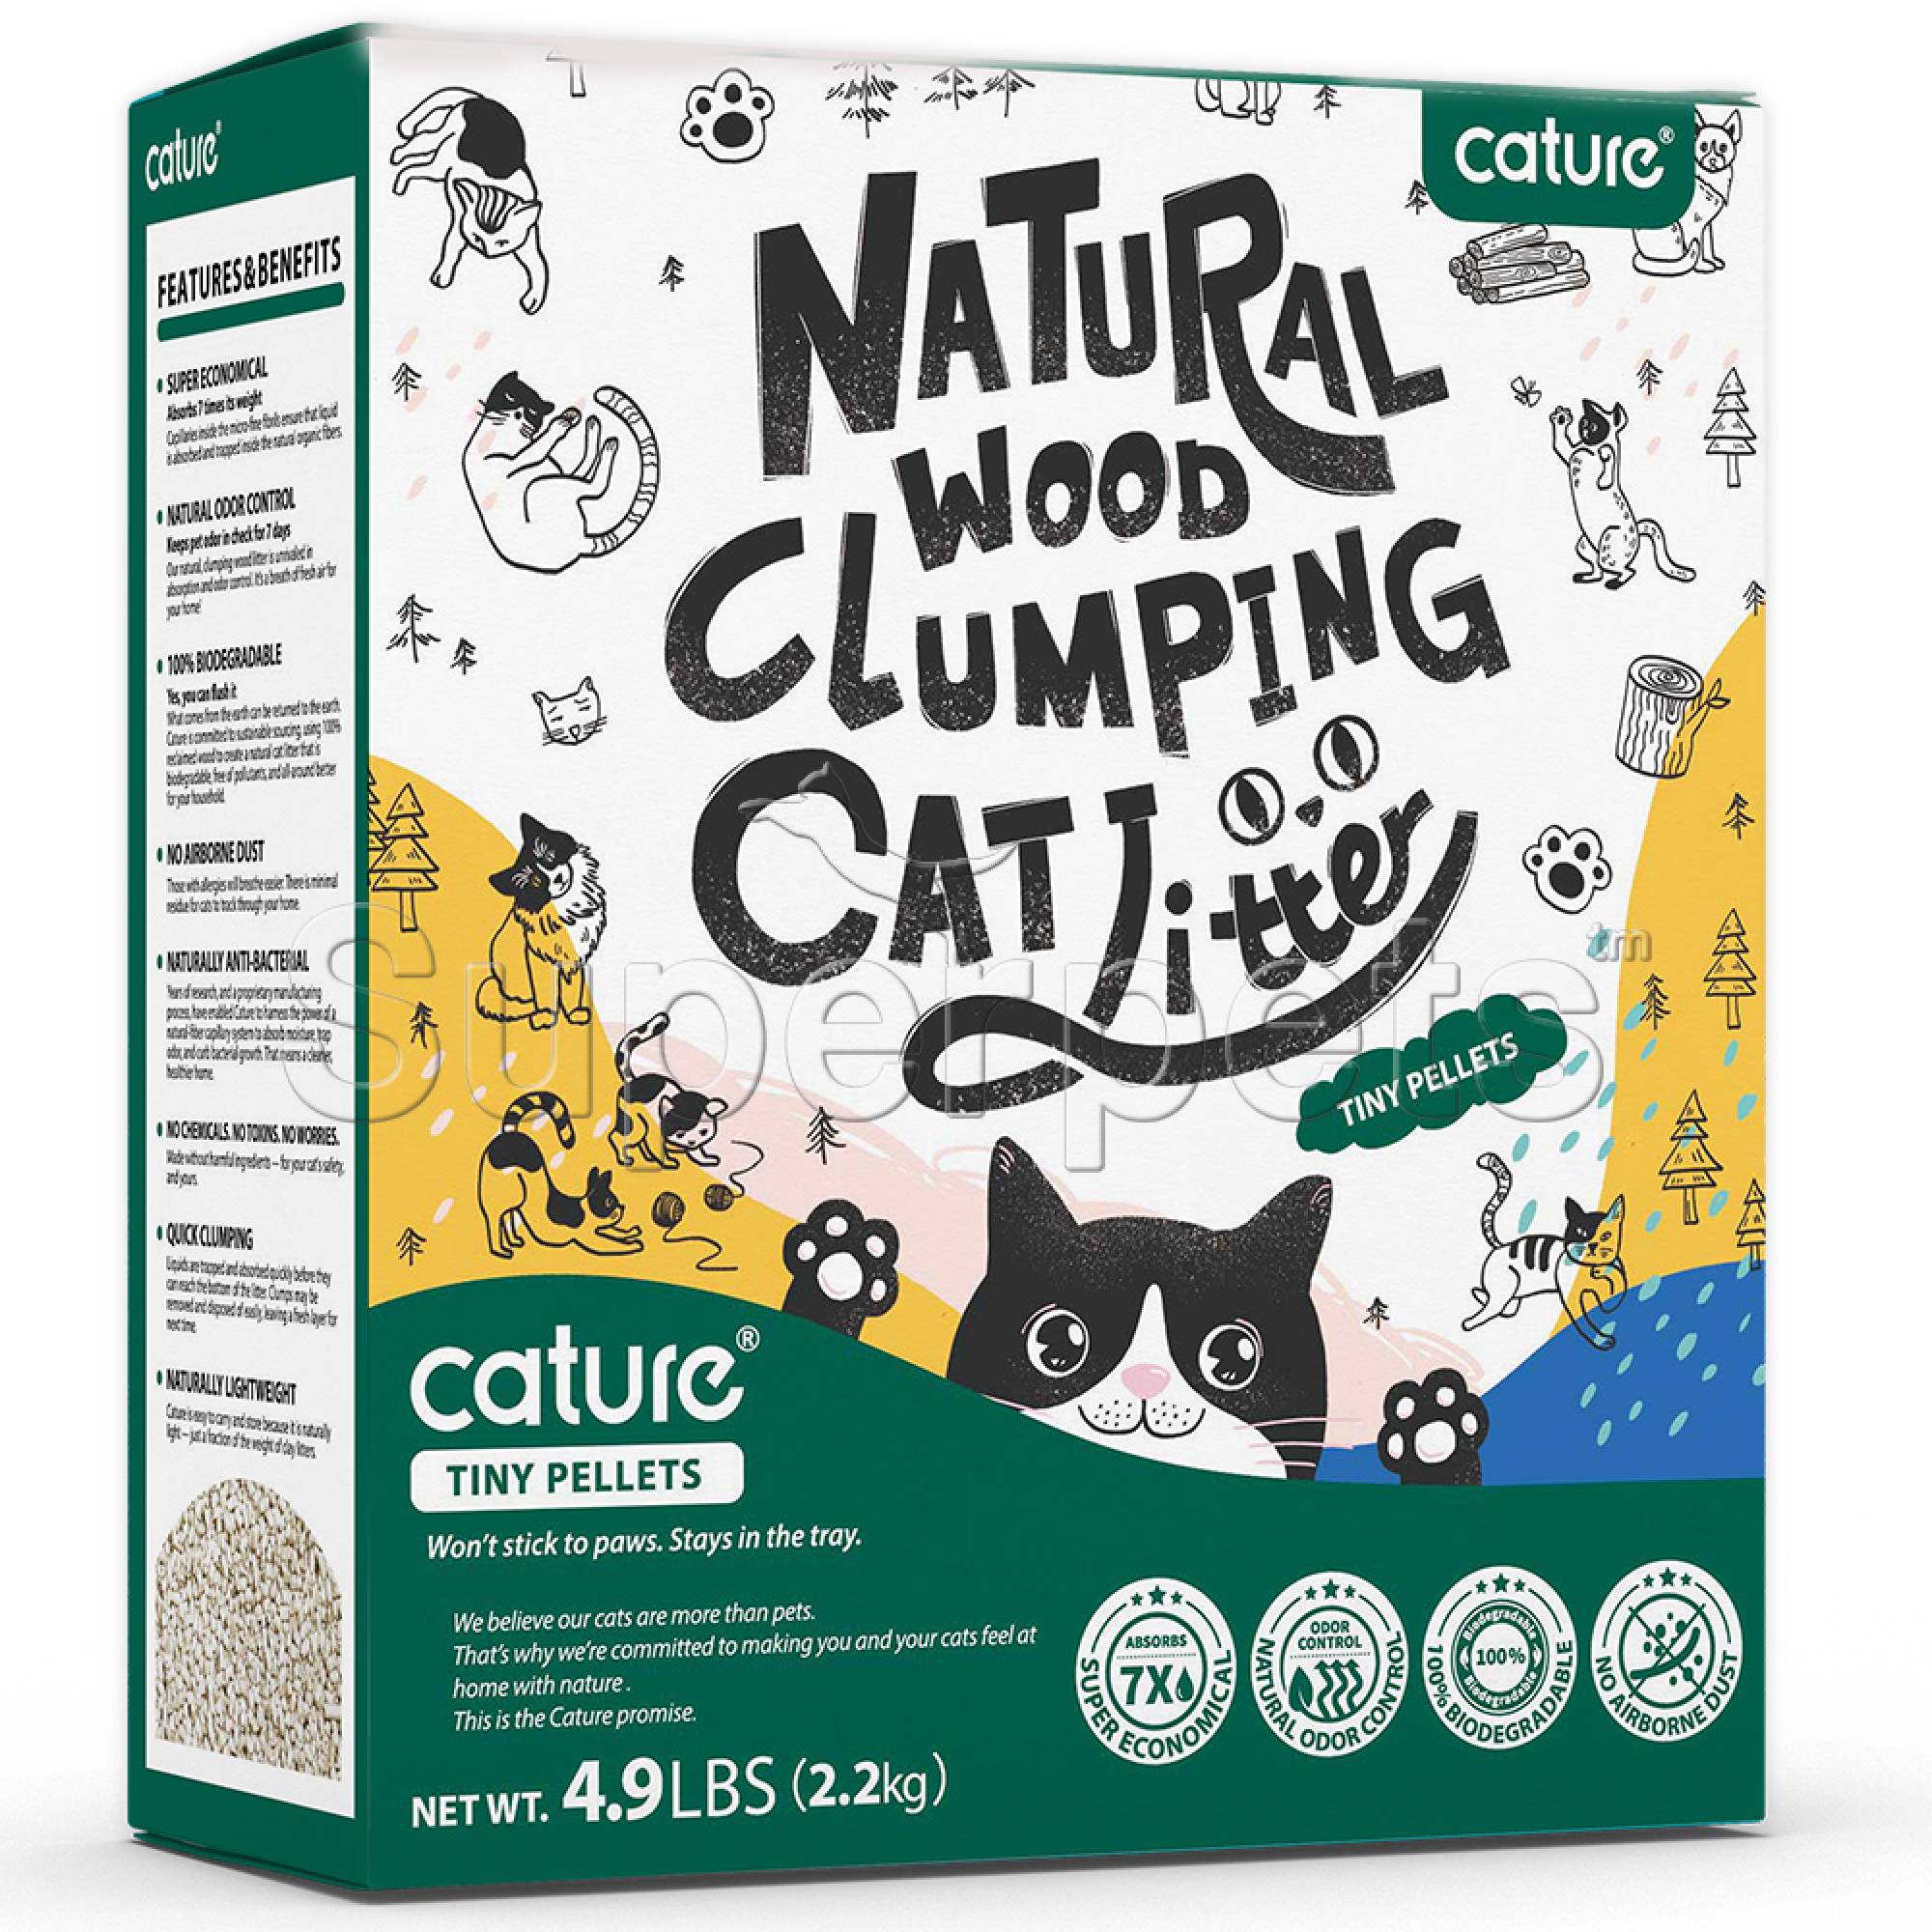 Cature Natural Wood Clumping Cat Litter - Tiny Pellets 6L (2.2kg)